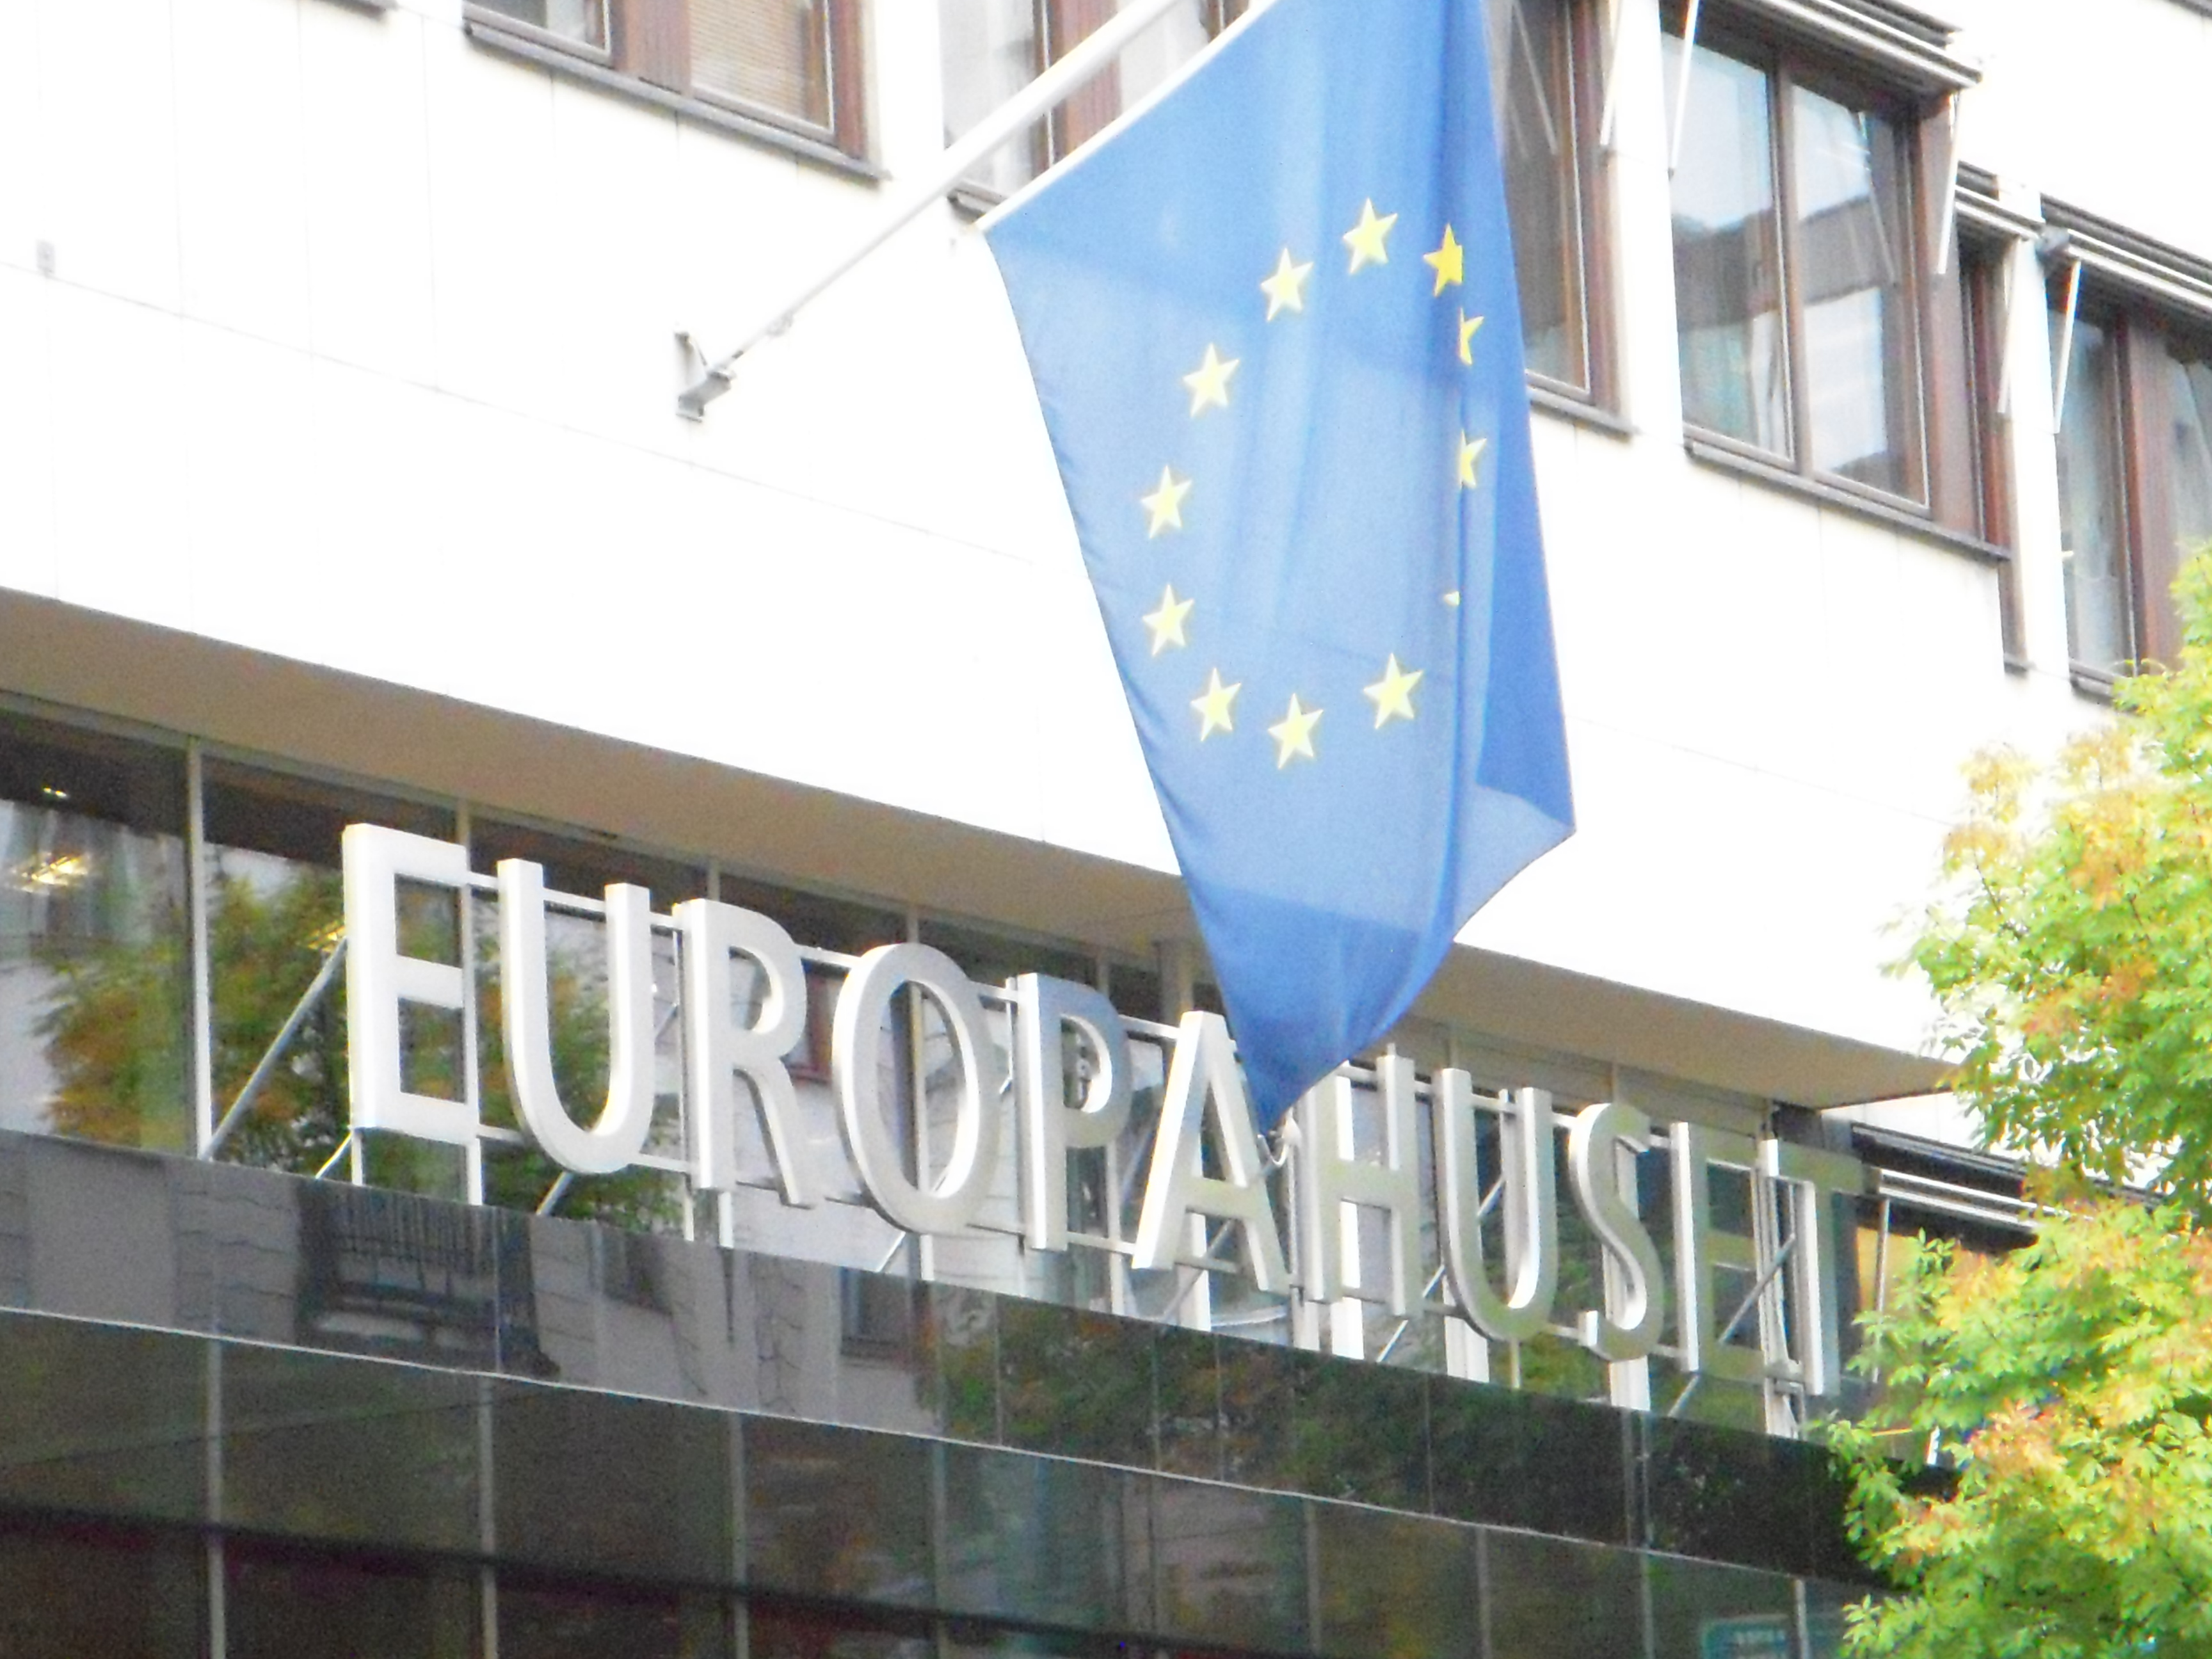 Europahuset fasad, med EU-flaggan och skylt med Europahuset i stora boksta ovanför entrén.